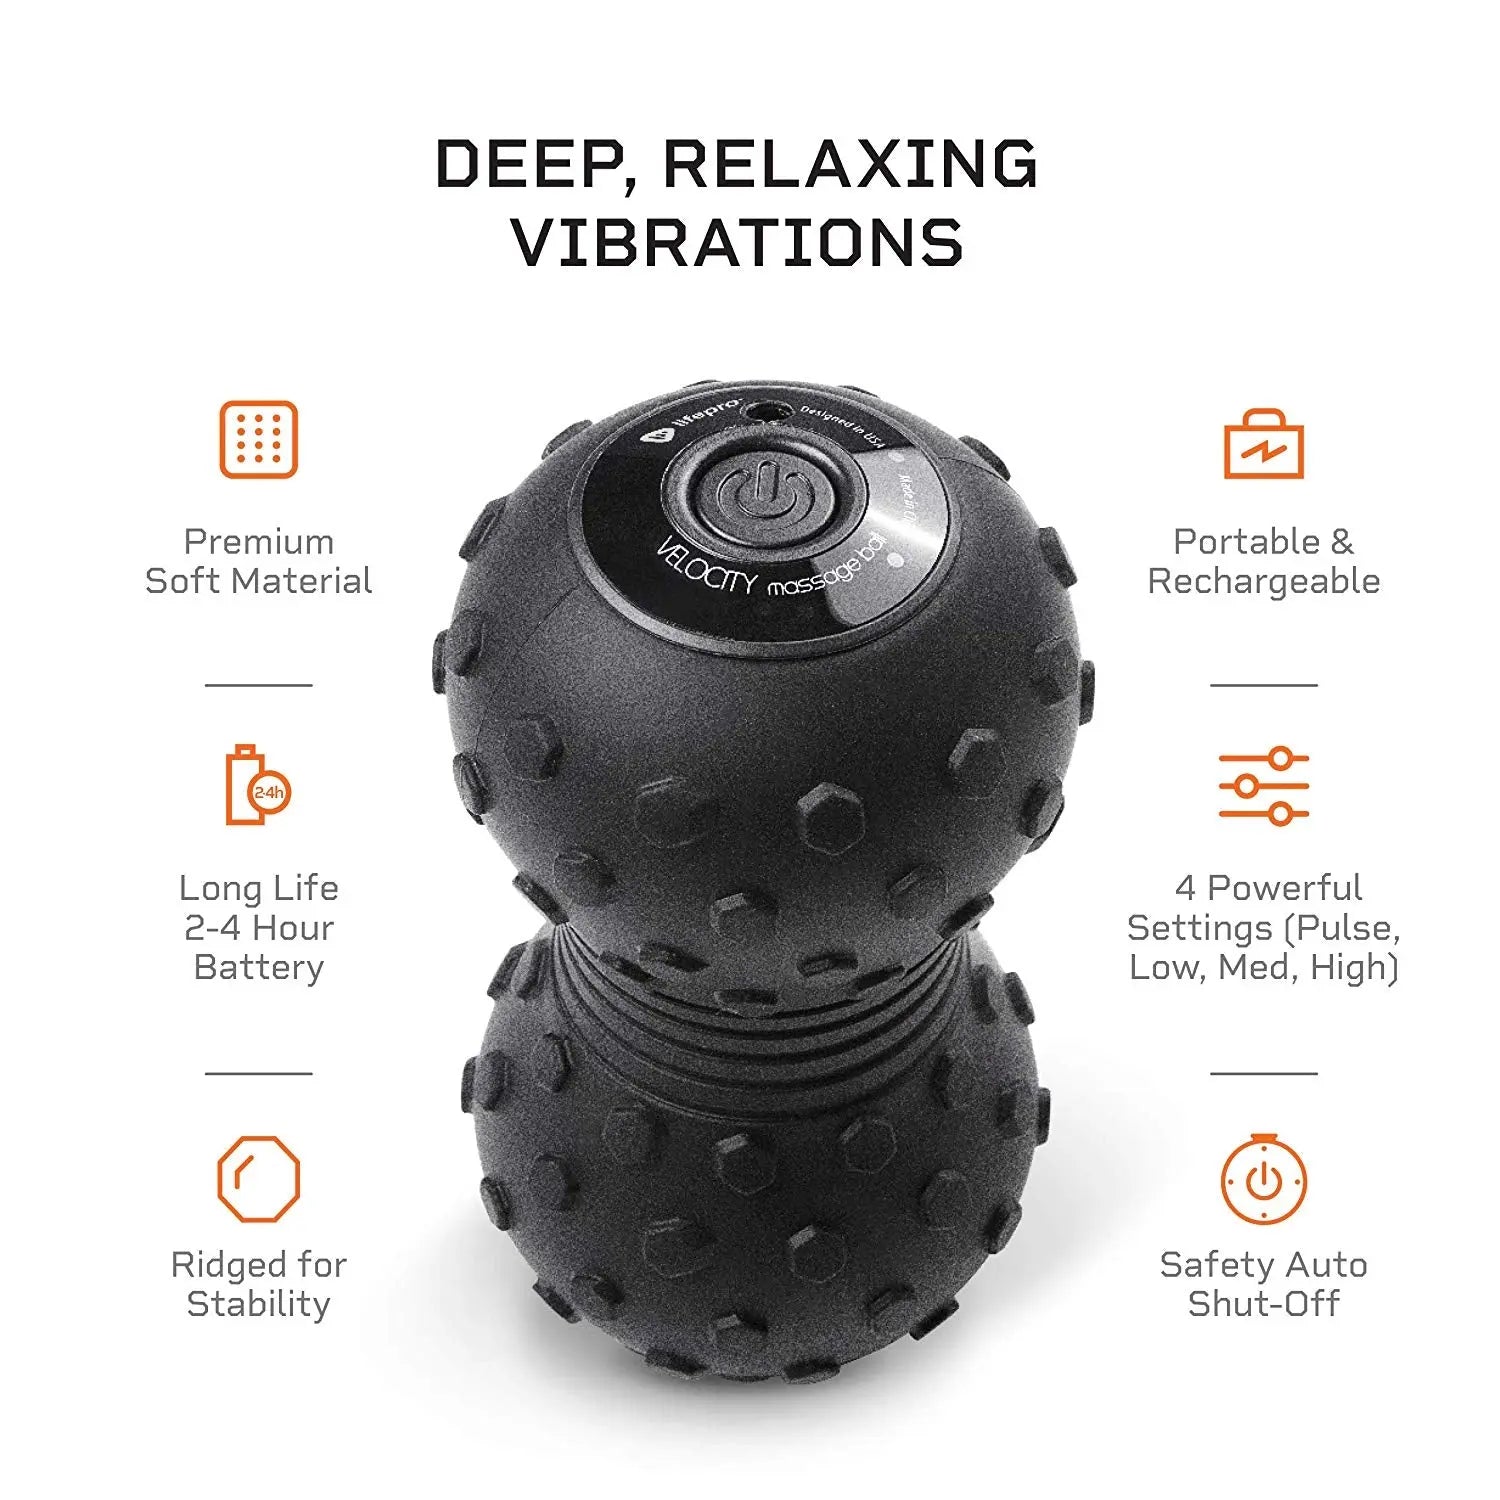 Lifepro Velocity Ball 2.0 Vibration Massage Ball | Lifepro